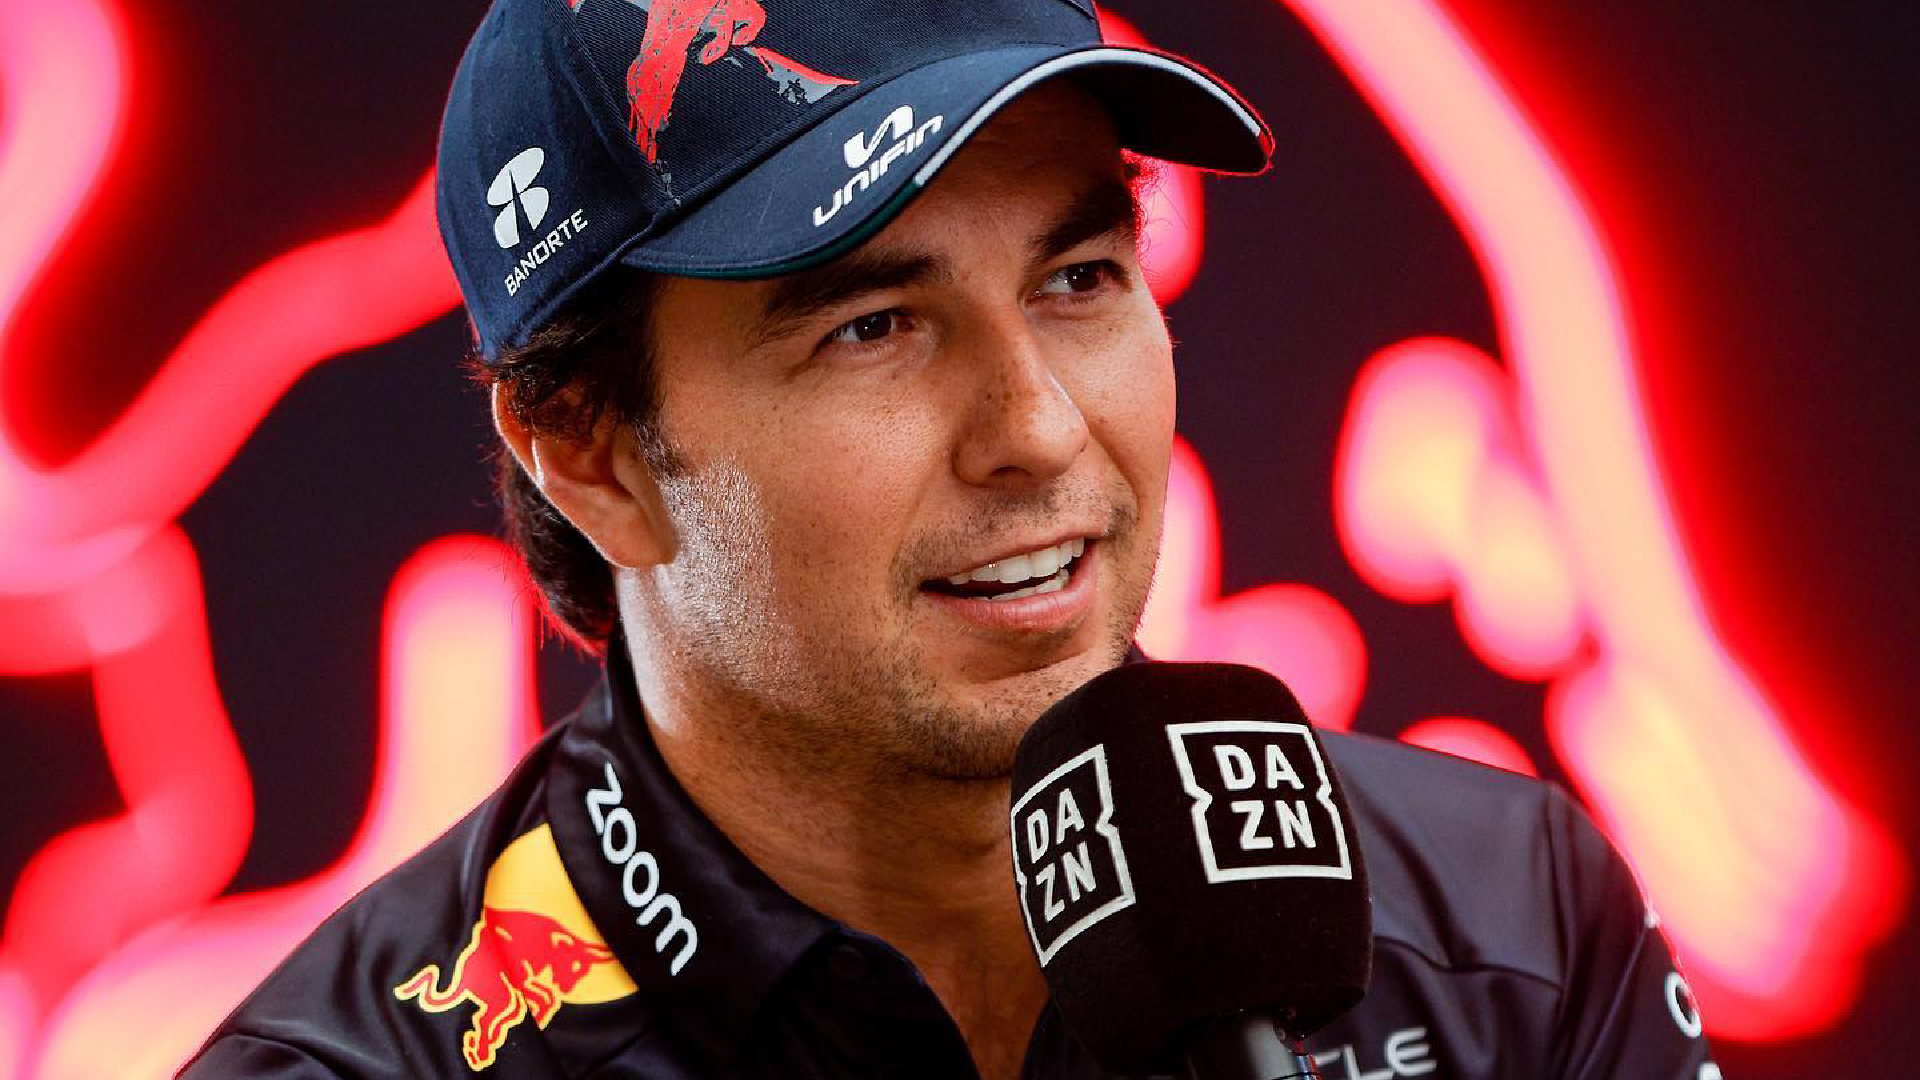 Checo Pérez en el Gran Premio de Australia: horarios y canales para ver la carrera en directo